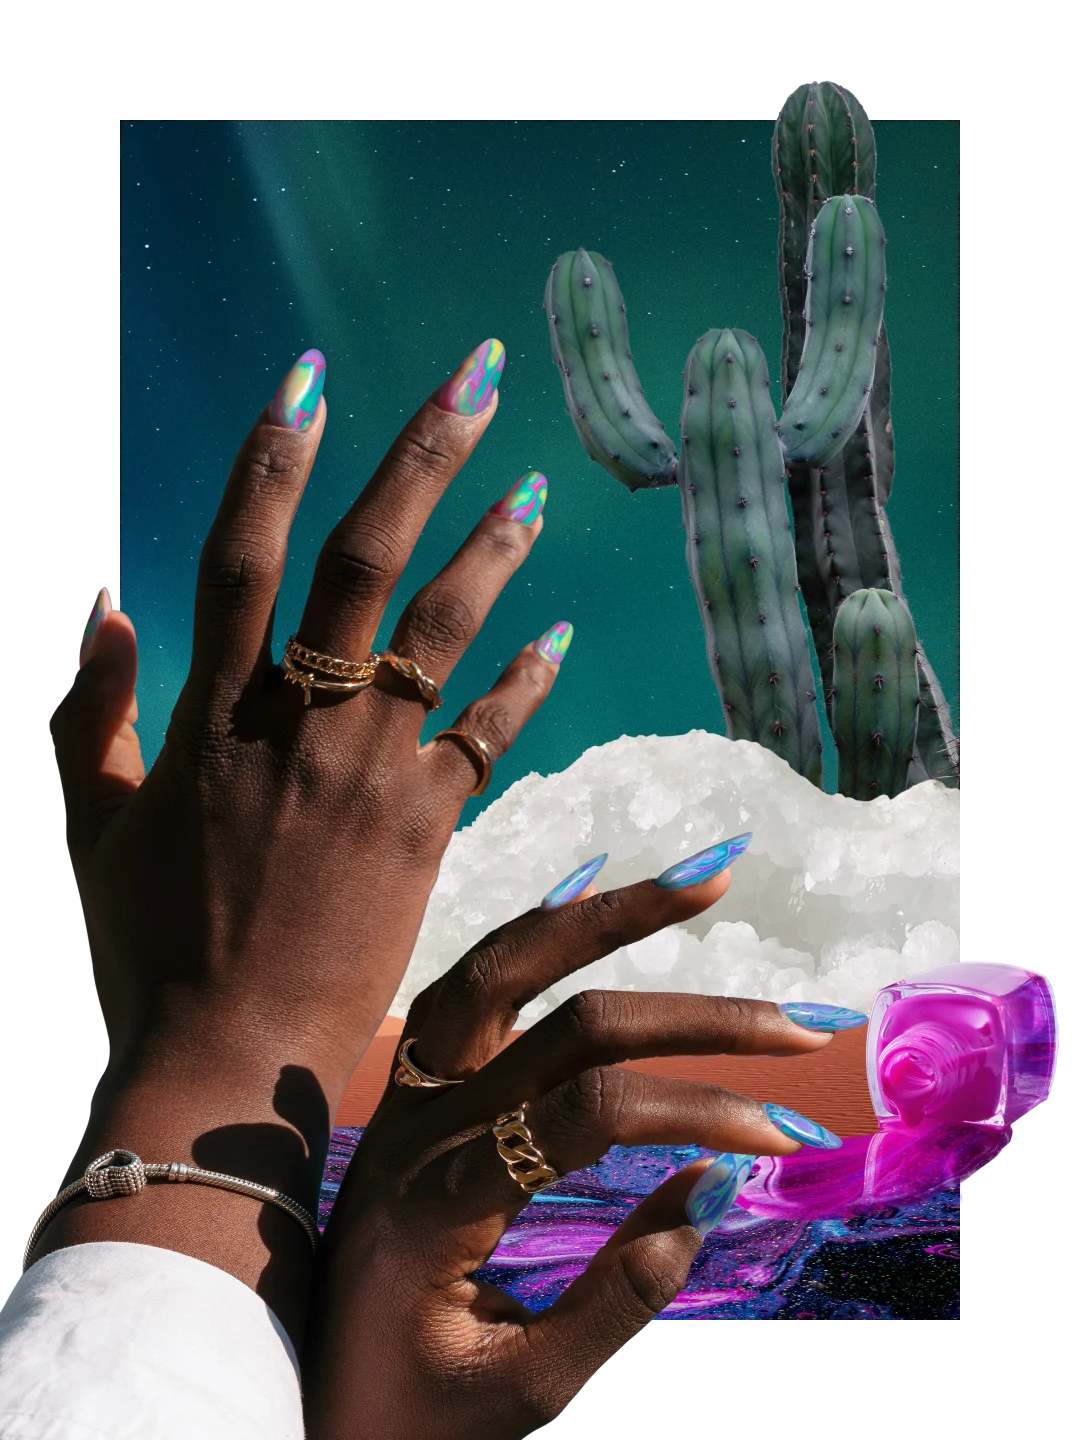 Collage sur le thème des ongles. À droite, vernis à ongles bleu, rose et violet coulant d’un flacon. À gauche, mains d’une femme noire avec des ongles multicolores. À droite, grand cactus avec des cristaux de sel à ses pieds.
